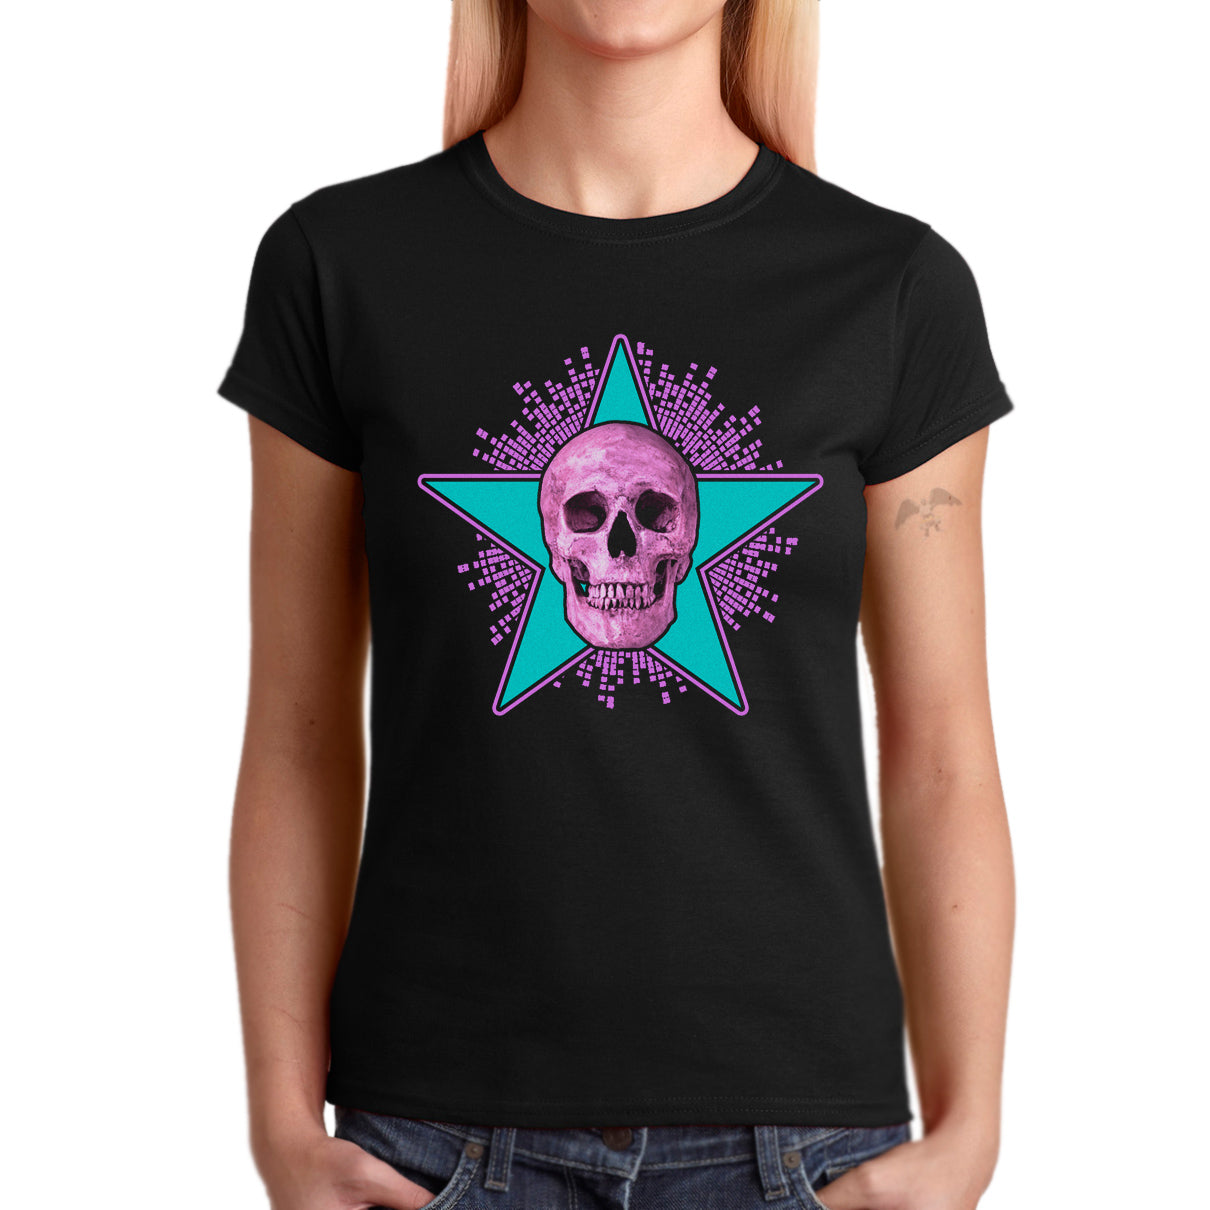 Dead Star (Art Show T-shirt)